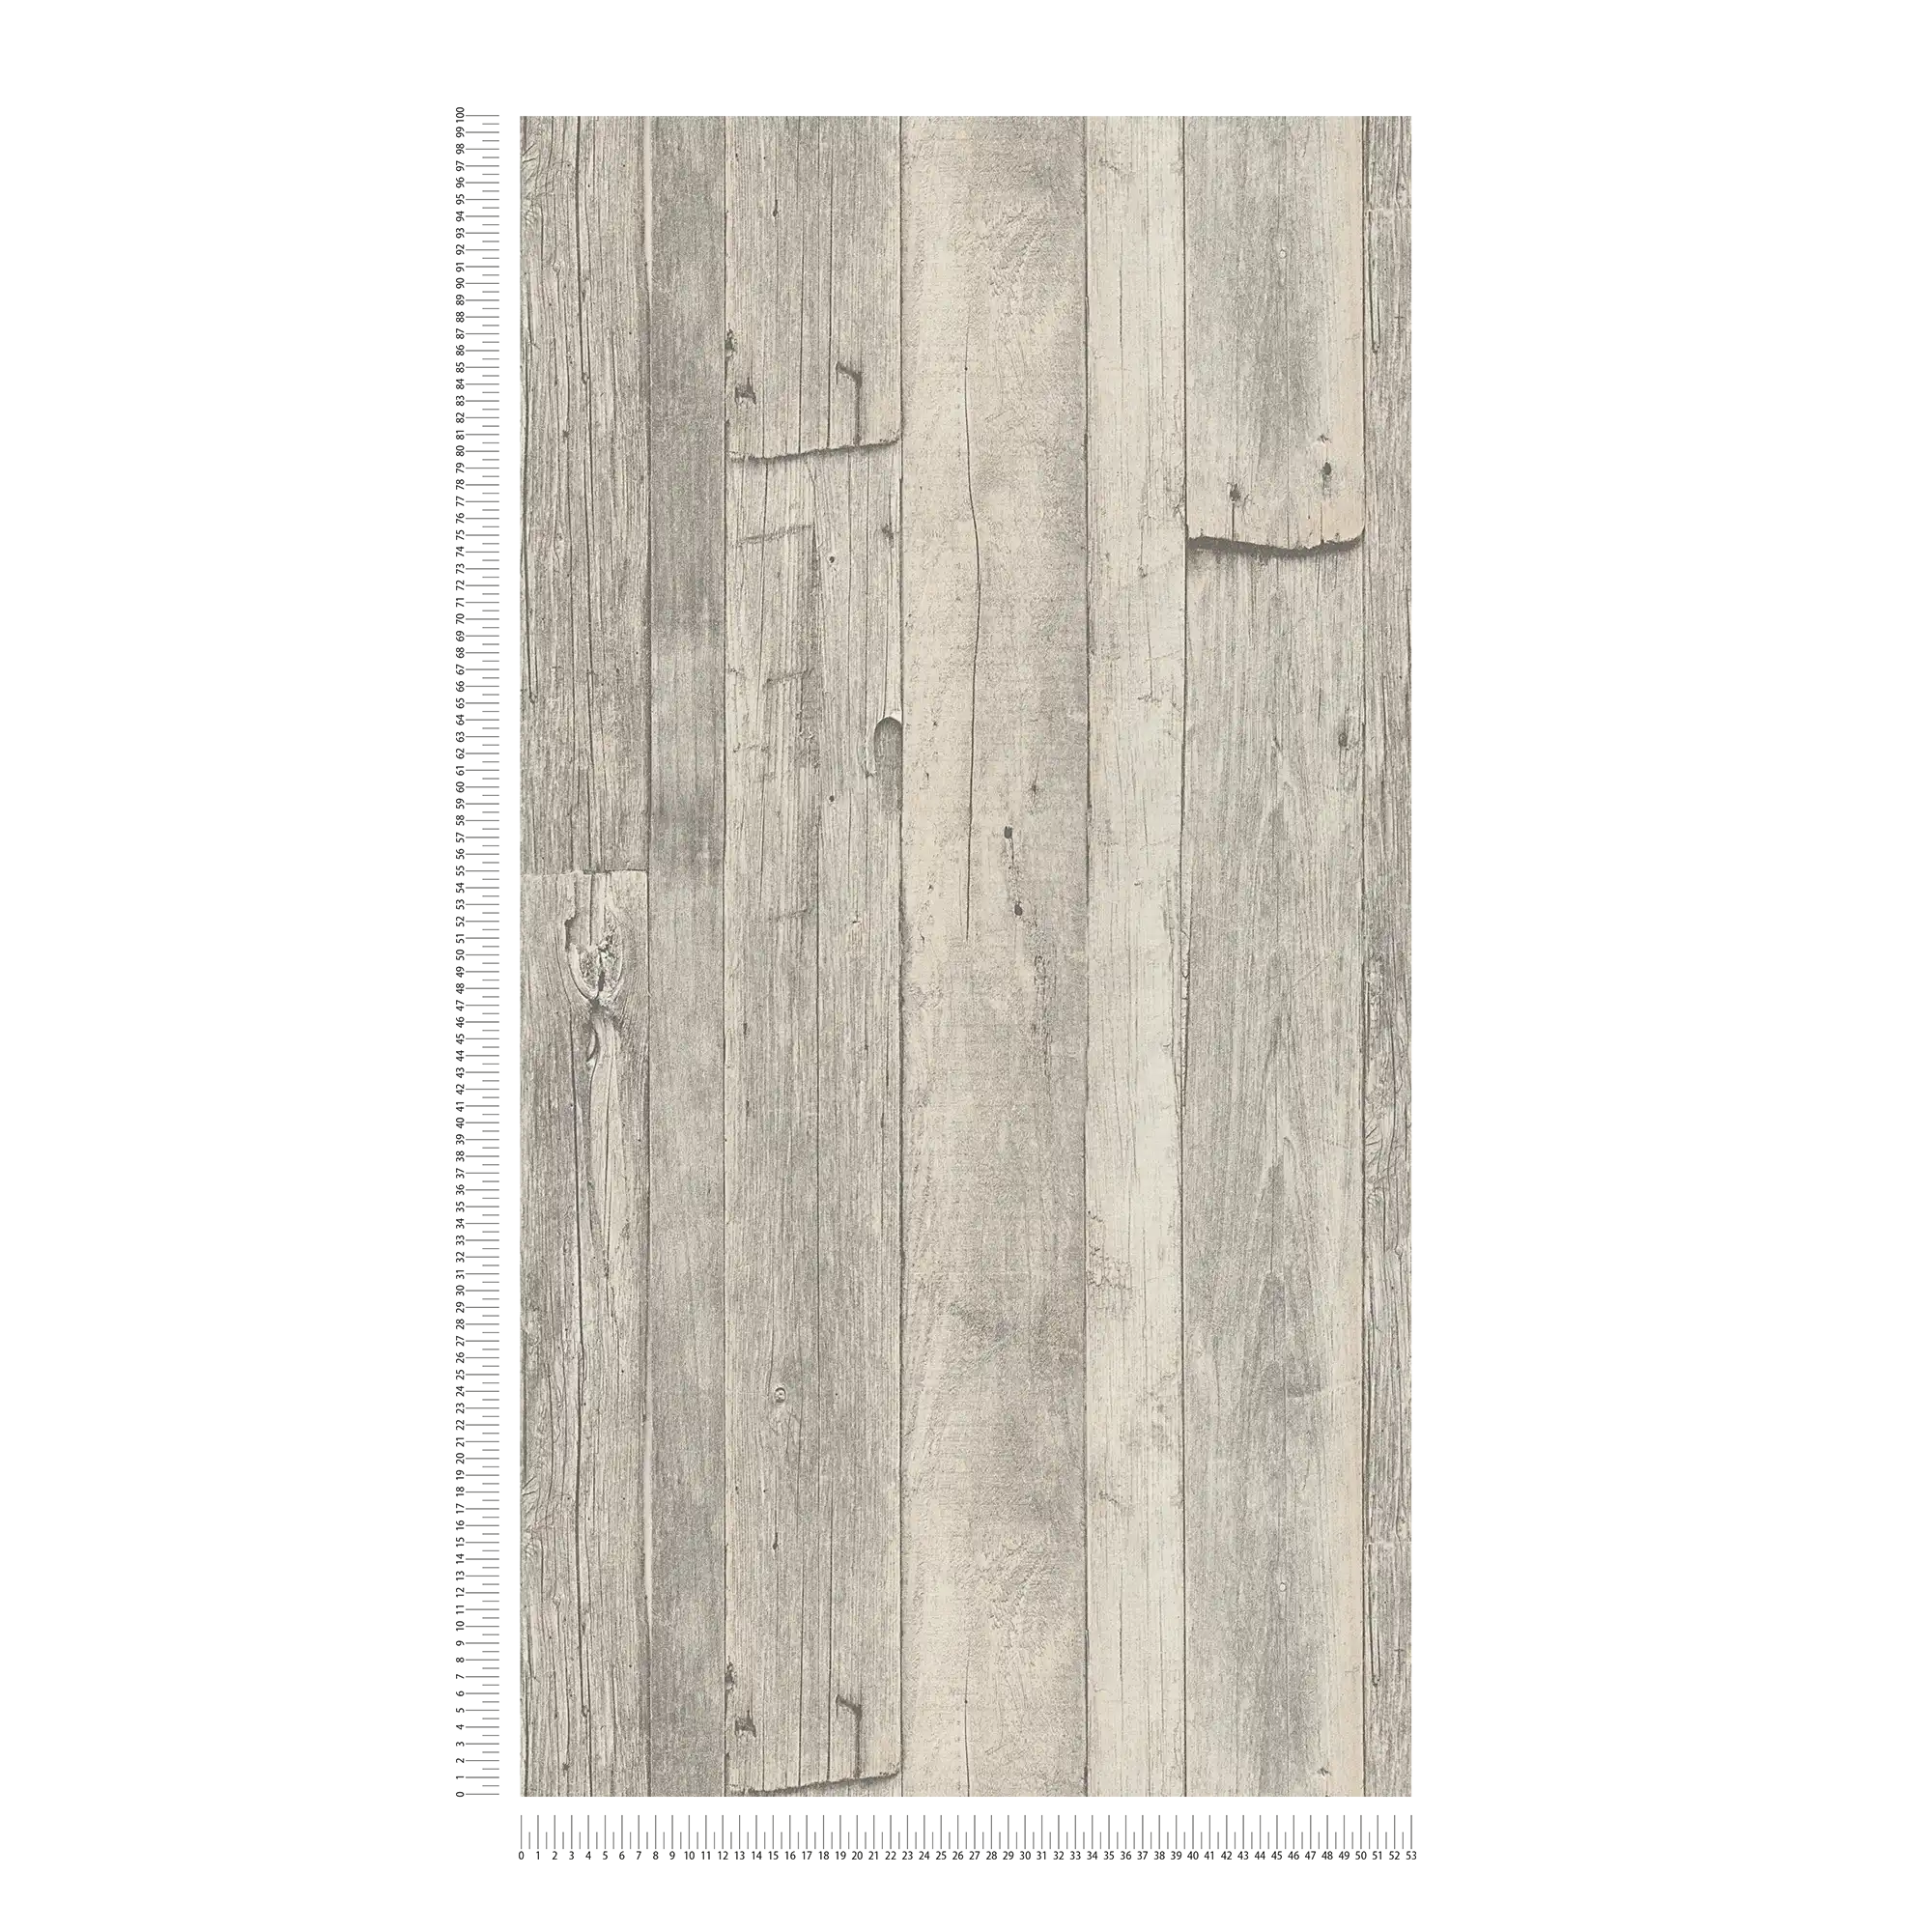             Carta da parati in legno con tavole e venature in design vintage - grigio, beige, crema
        